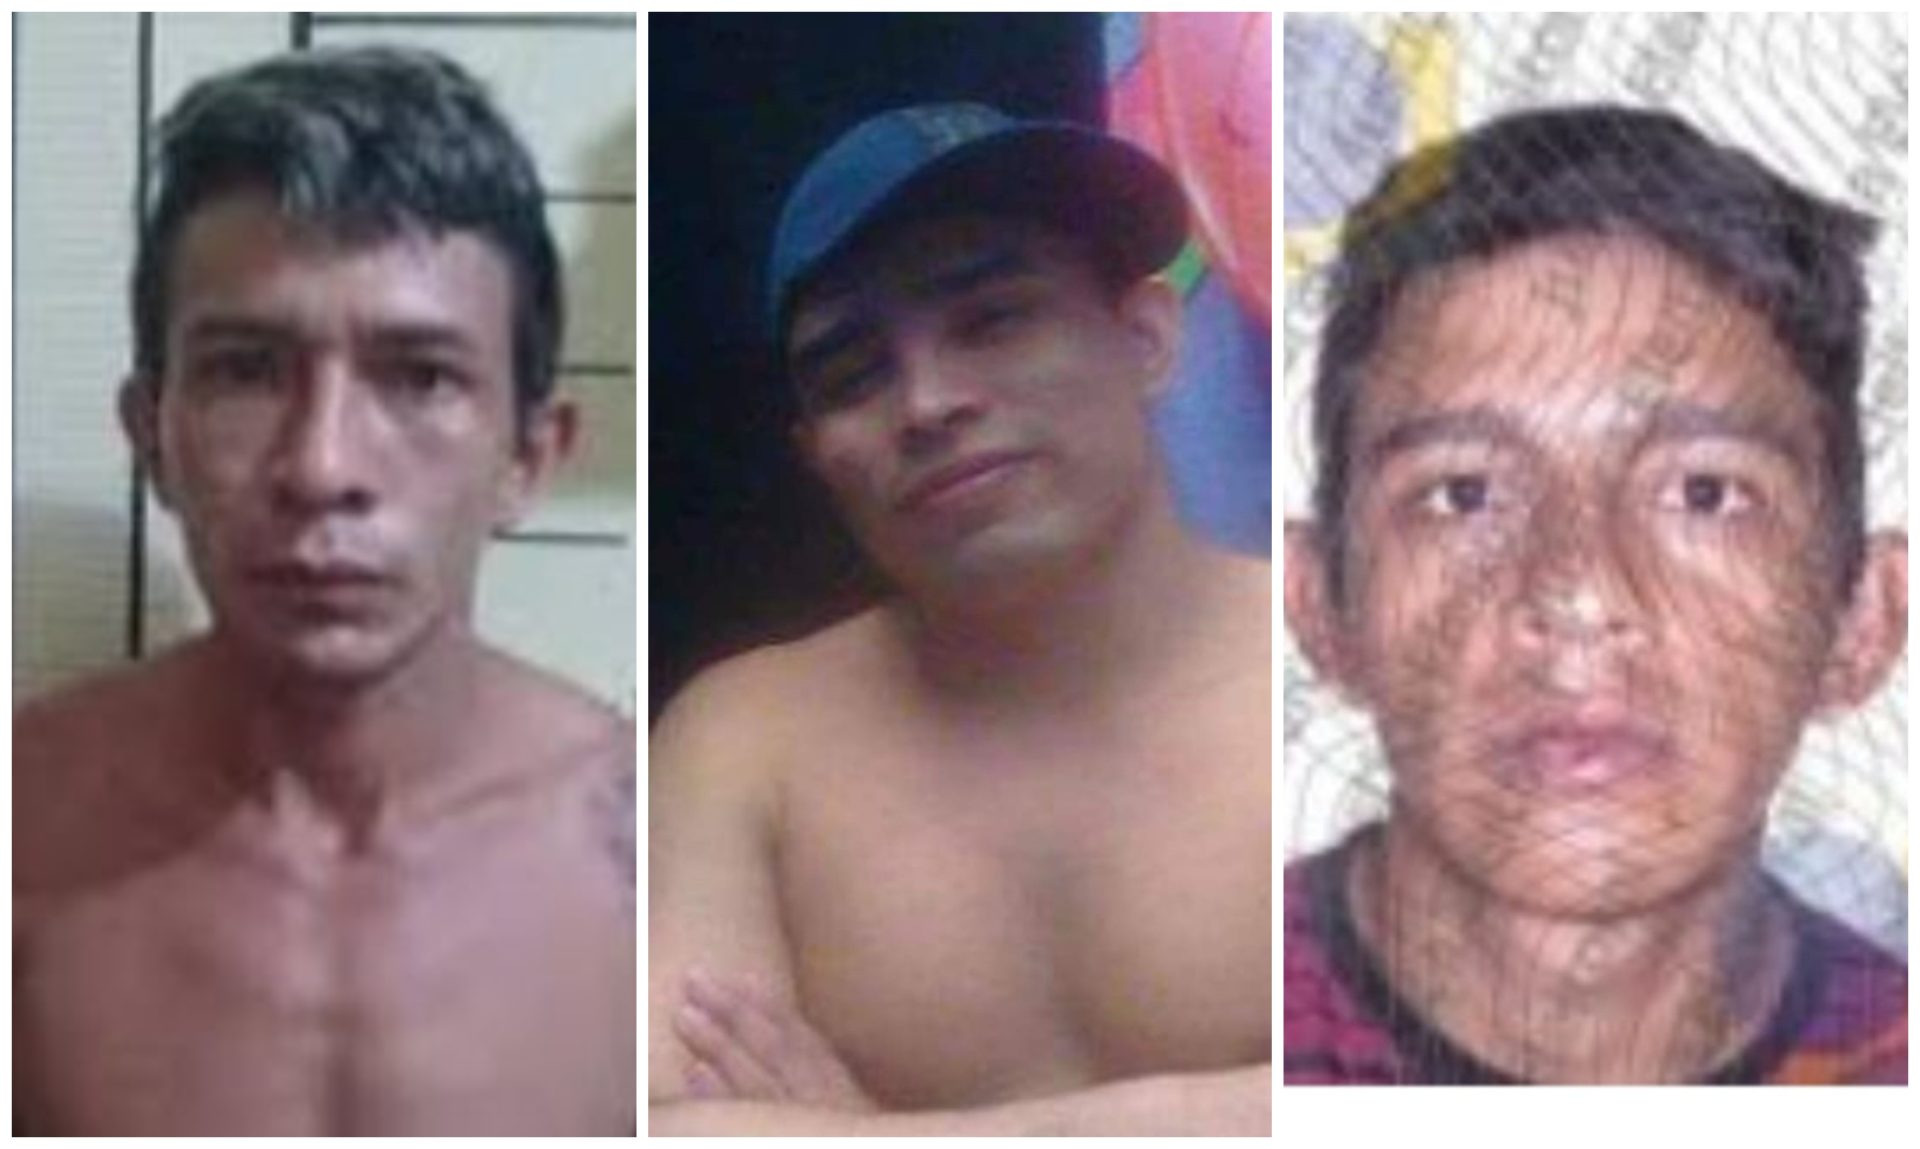 Procurados por praticarem crimes em Itapiranga, no interior do Amazonas - Foto: Divulgação/PC-AM